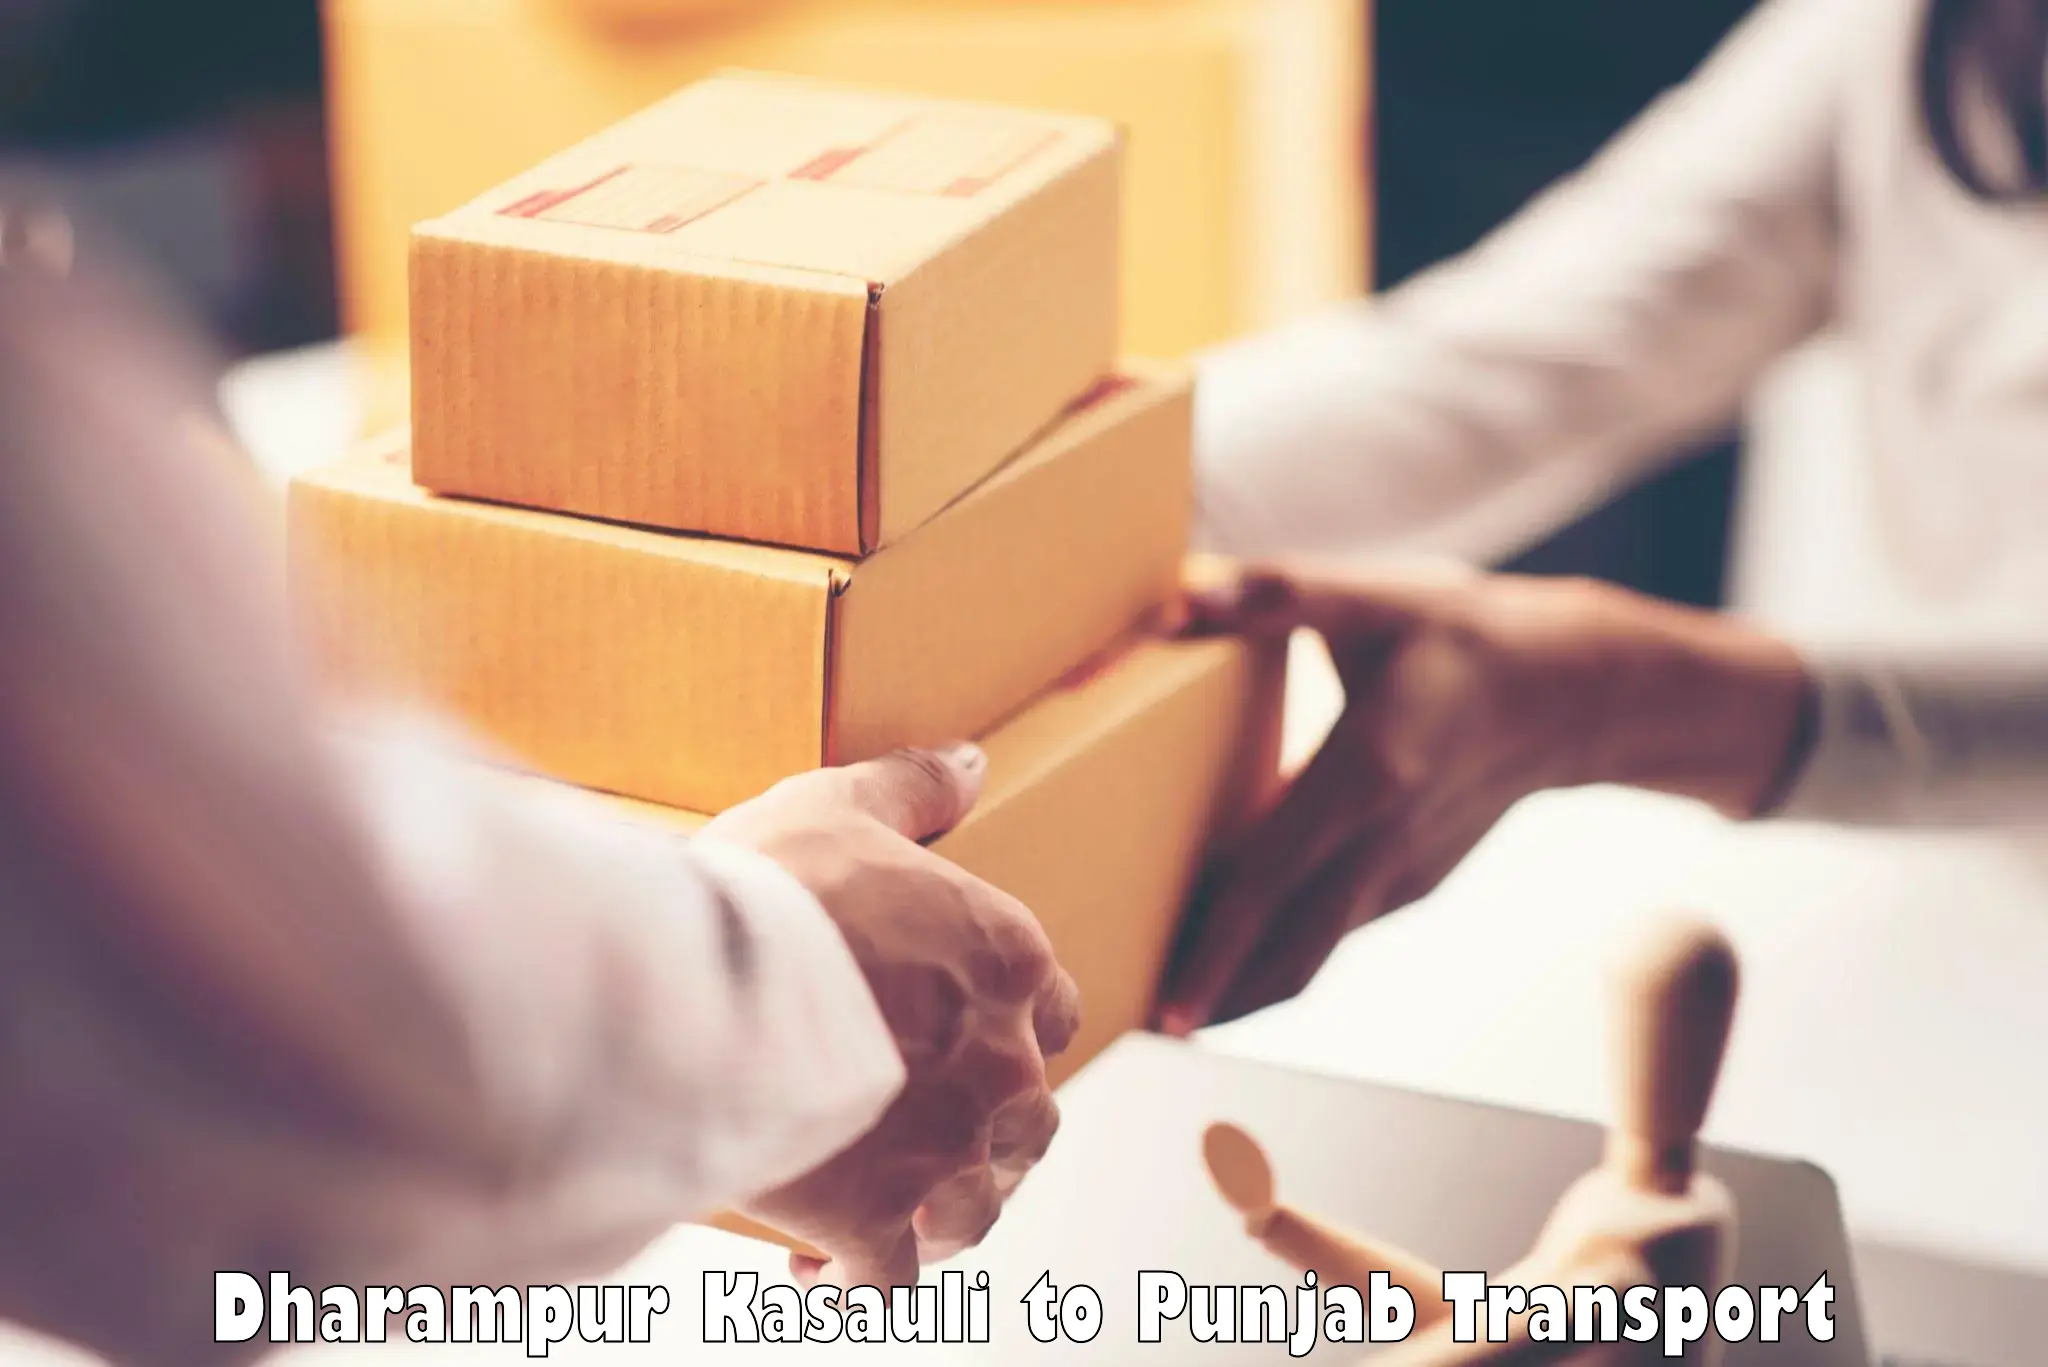 Furniture transport service Dharampur Kasauli to Phagwara